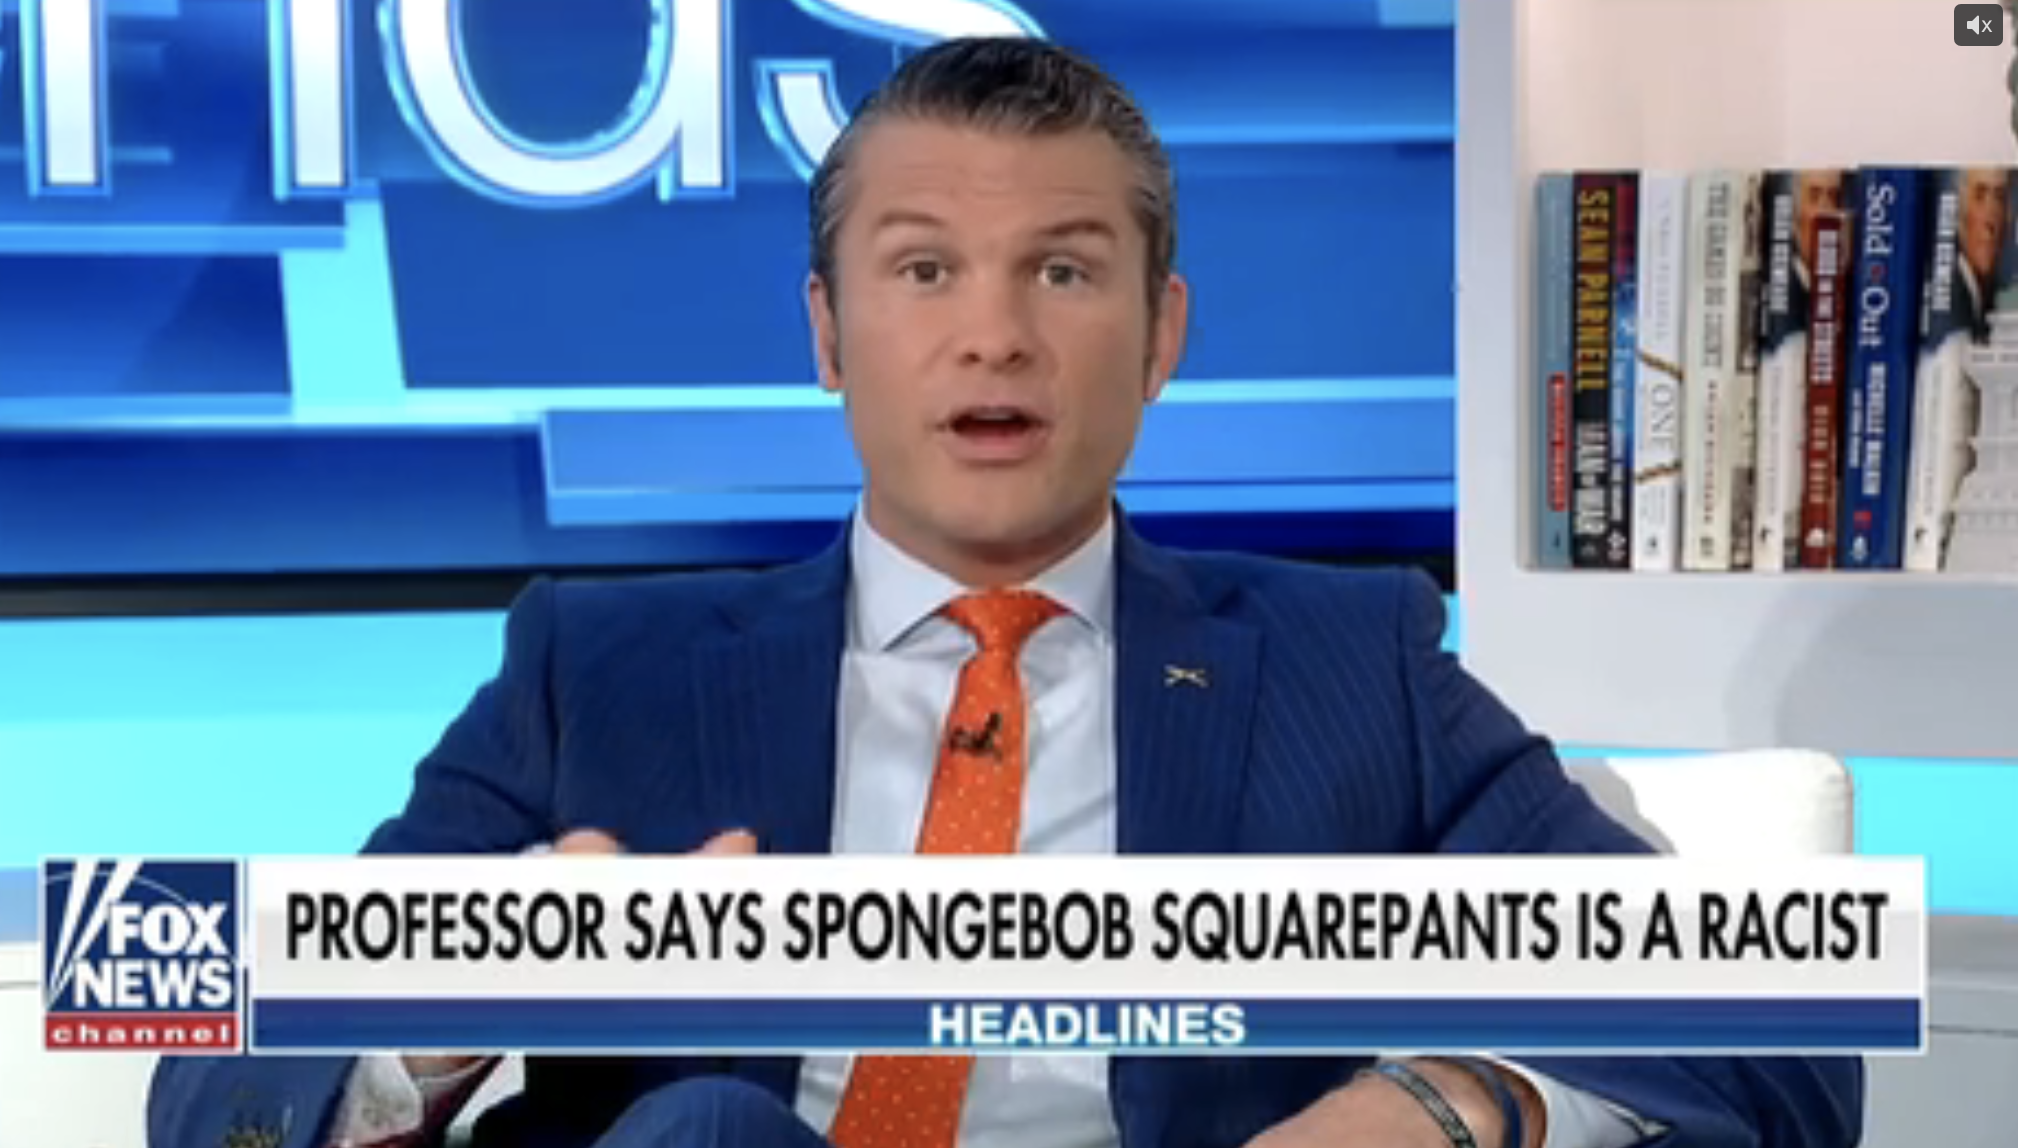 &quot;Professor says SpongeBob SquarePants is a racist&quot;